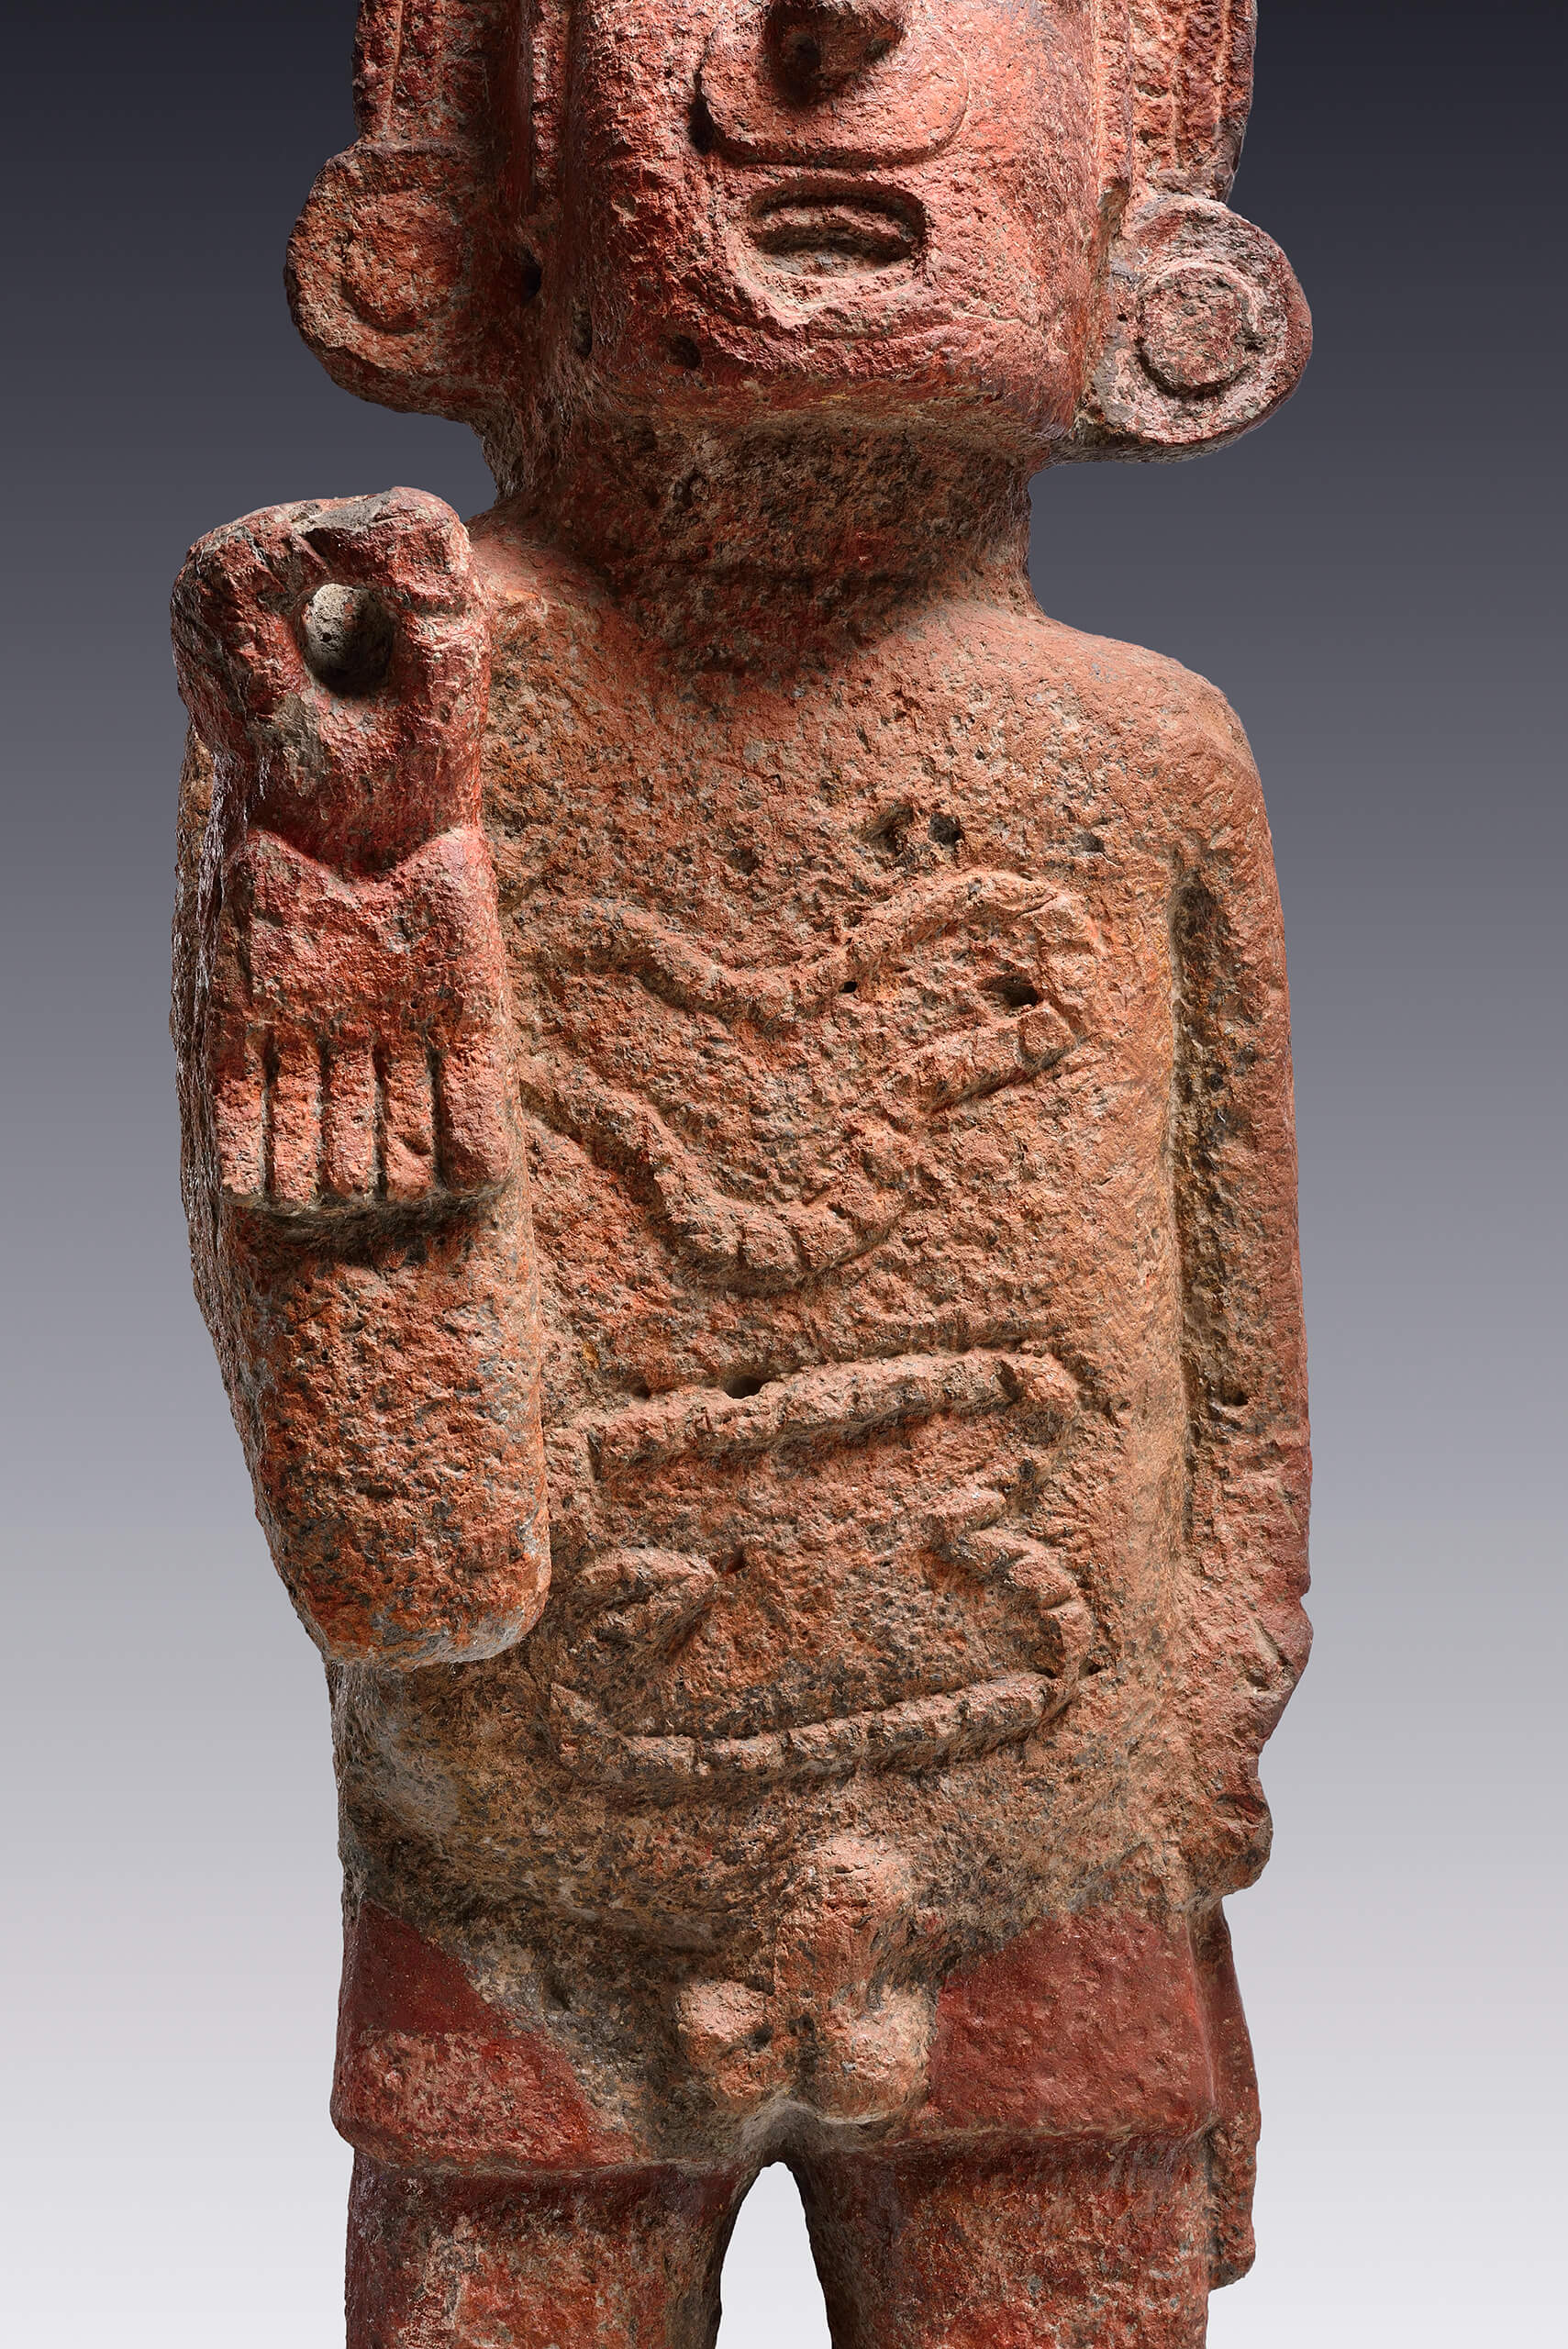 Xipe Tótec | El México antiguo. Salas de Arte Prehispánico | Museo Amparo, Puebla